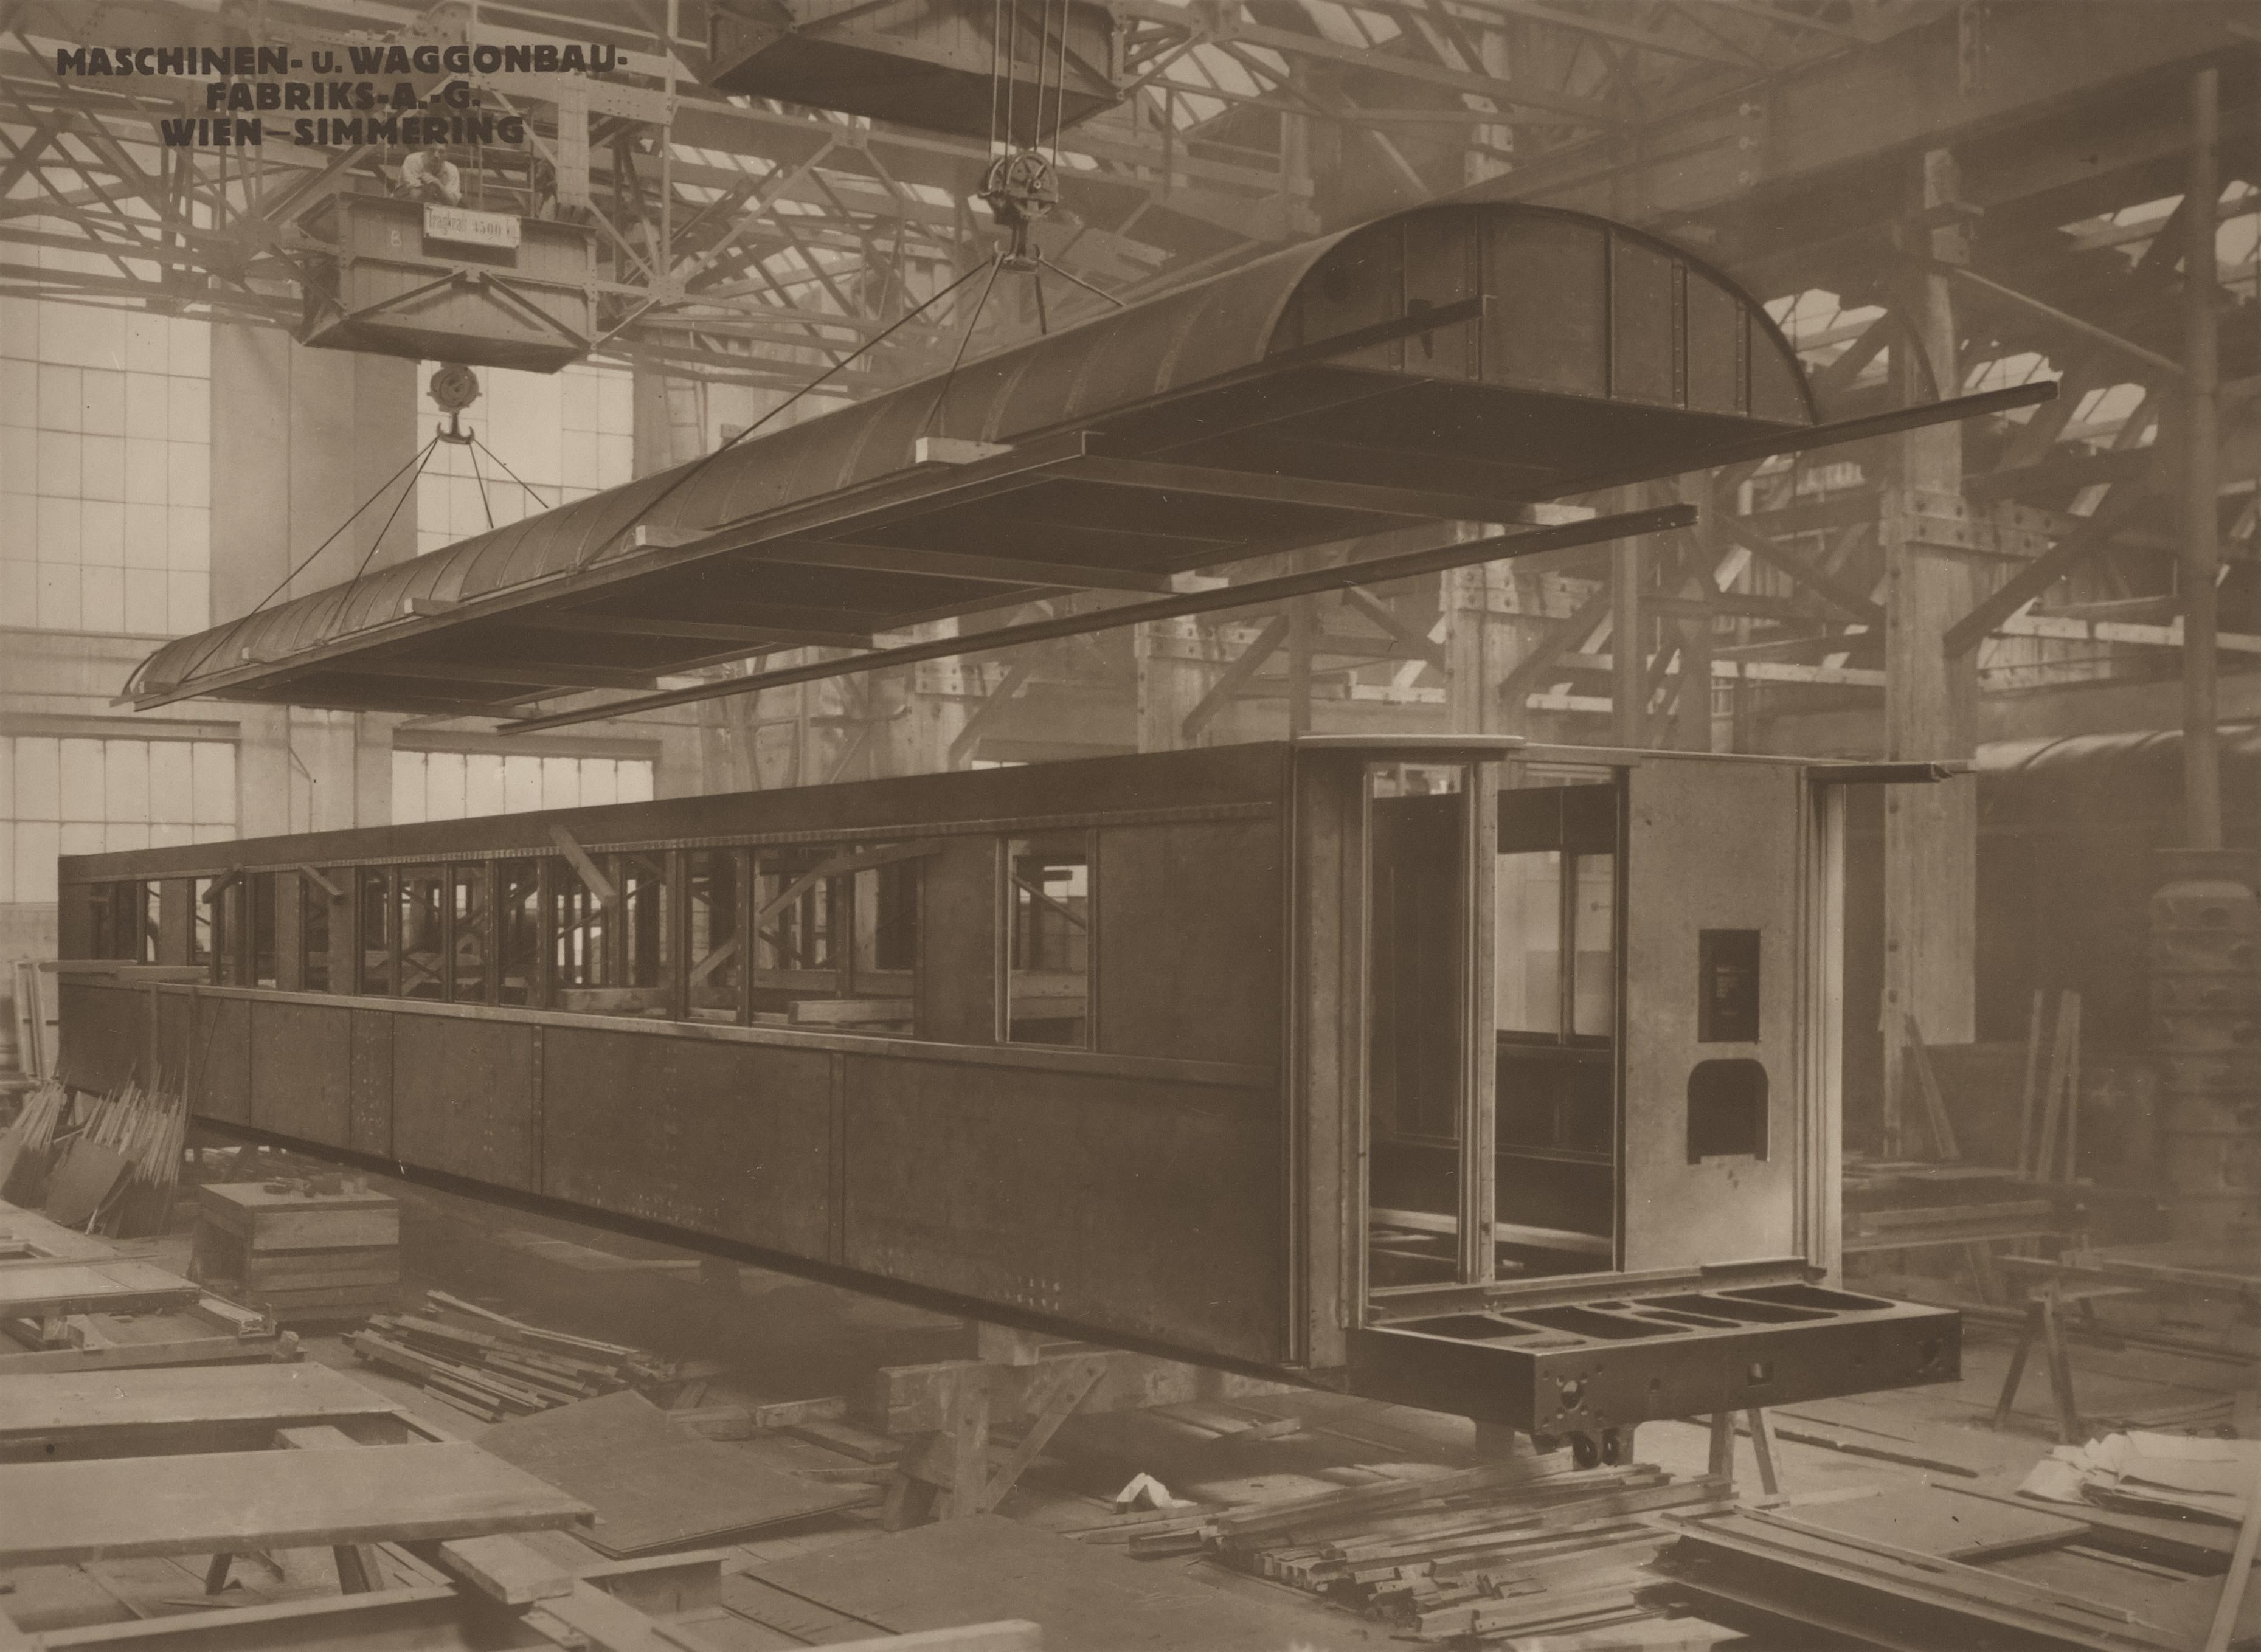  Construction de voitures lits et voitures restaurants pour la CIWL © Wilhelm Wagner, Atelier für industrielle und technische Photographie,1930. FDOE - Exposition Orient-Express & Cie.